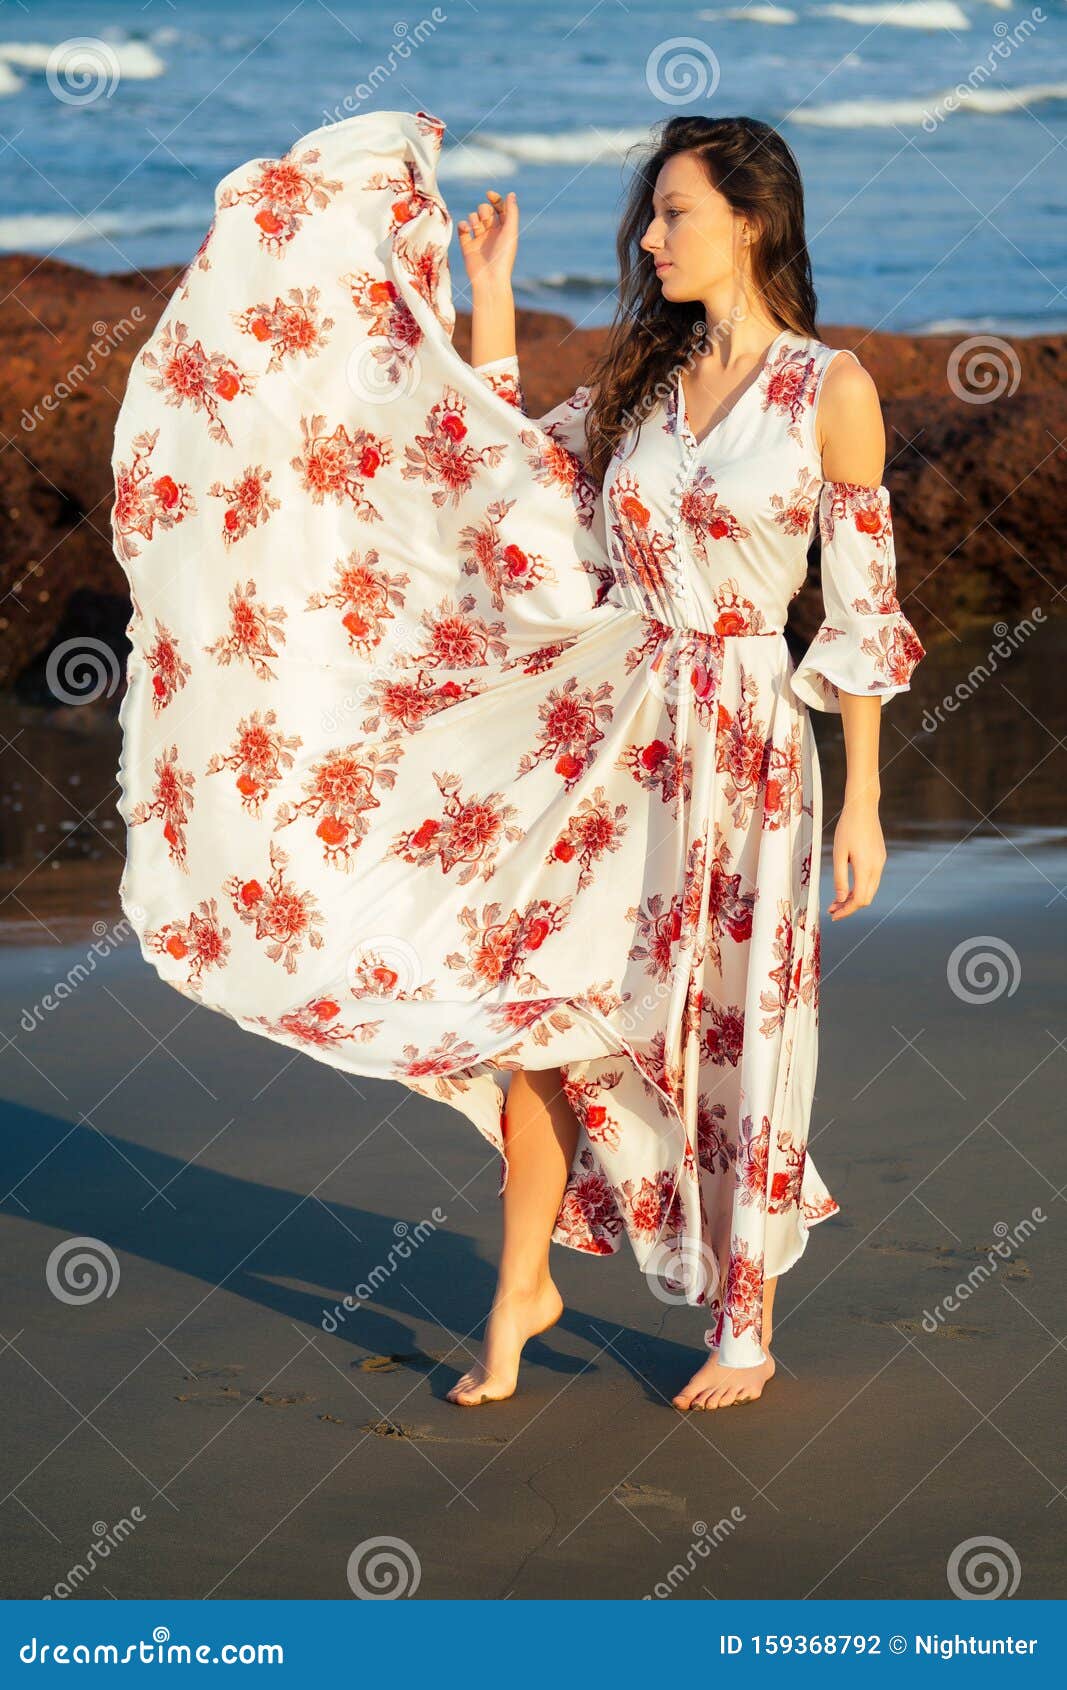 Hermosa Joven Vestida Con Un Elegante Vestido Blanco Largo Con Flores De ImpresiÃ³n Roja Que Disfruta Un DÃa En La Mariposa de archivo - de celebre, hawai: 159368792